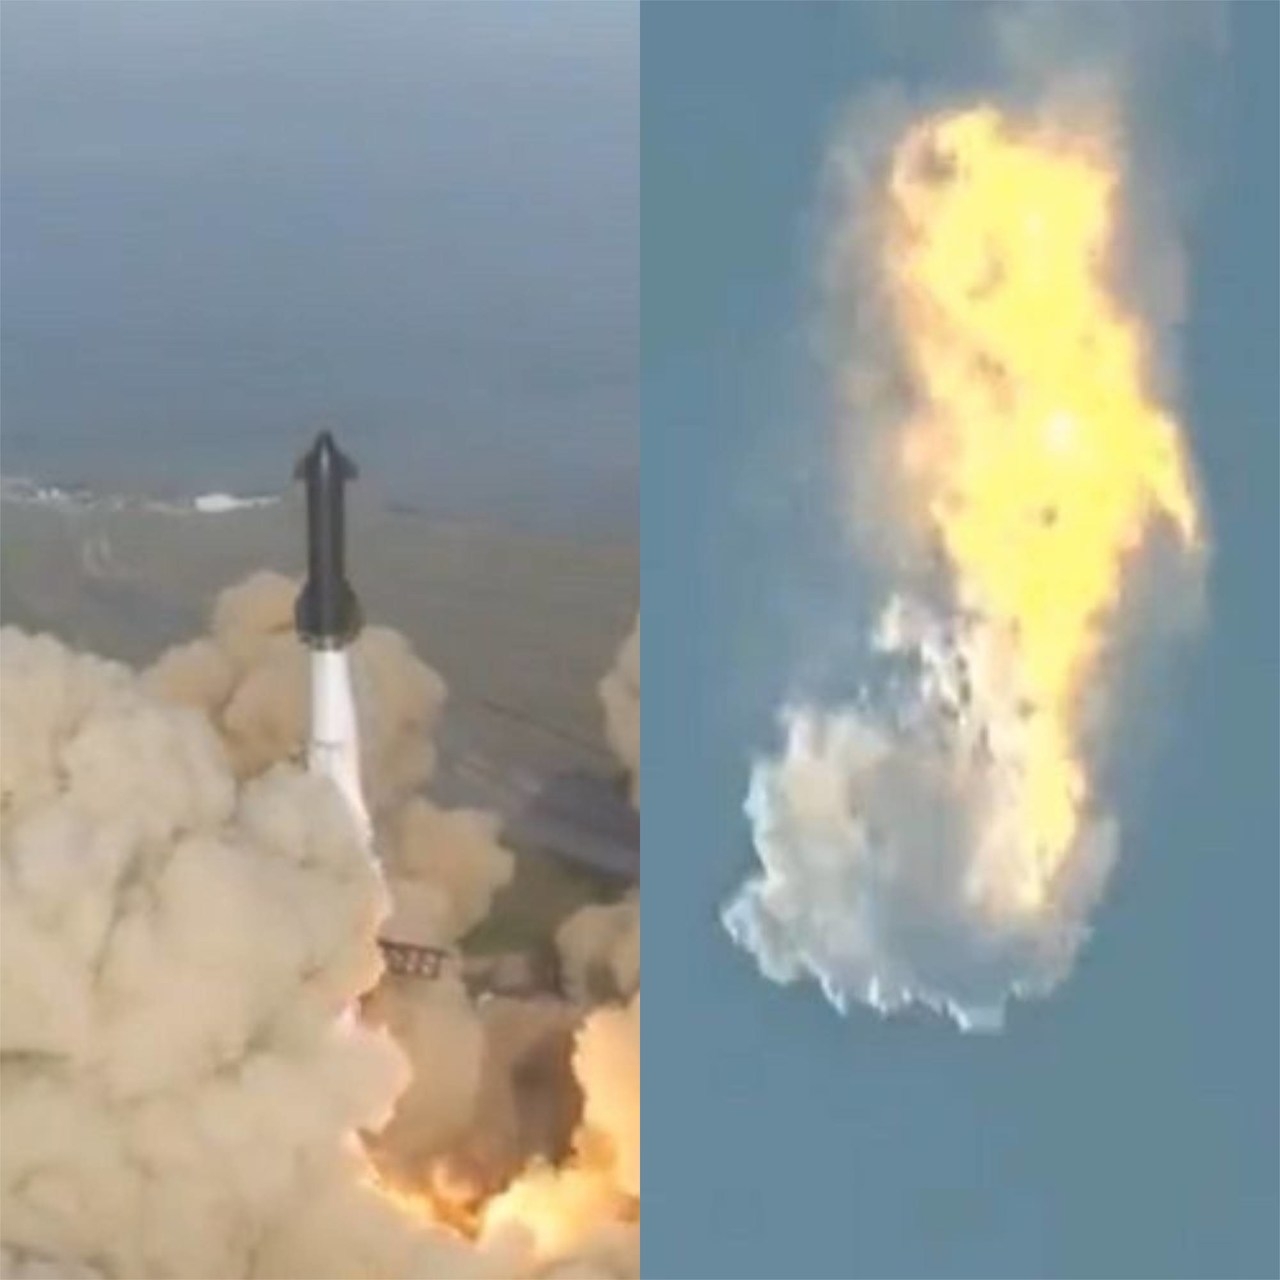  Em abril deste ano, um foguete da SpaceX também explodiu pouco após o lançamento. O Flipar relembra a seguir todos os detalhes do incidente.